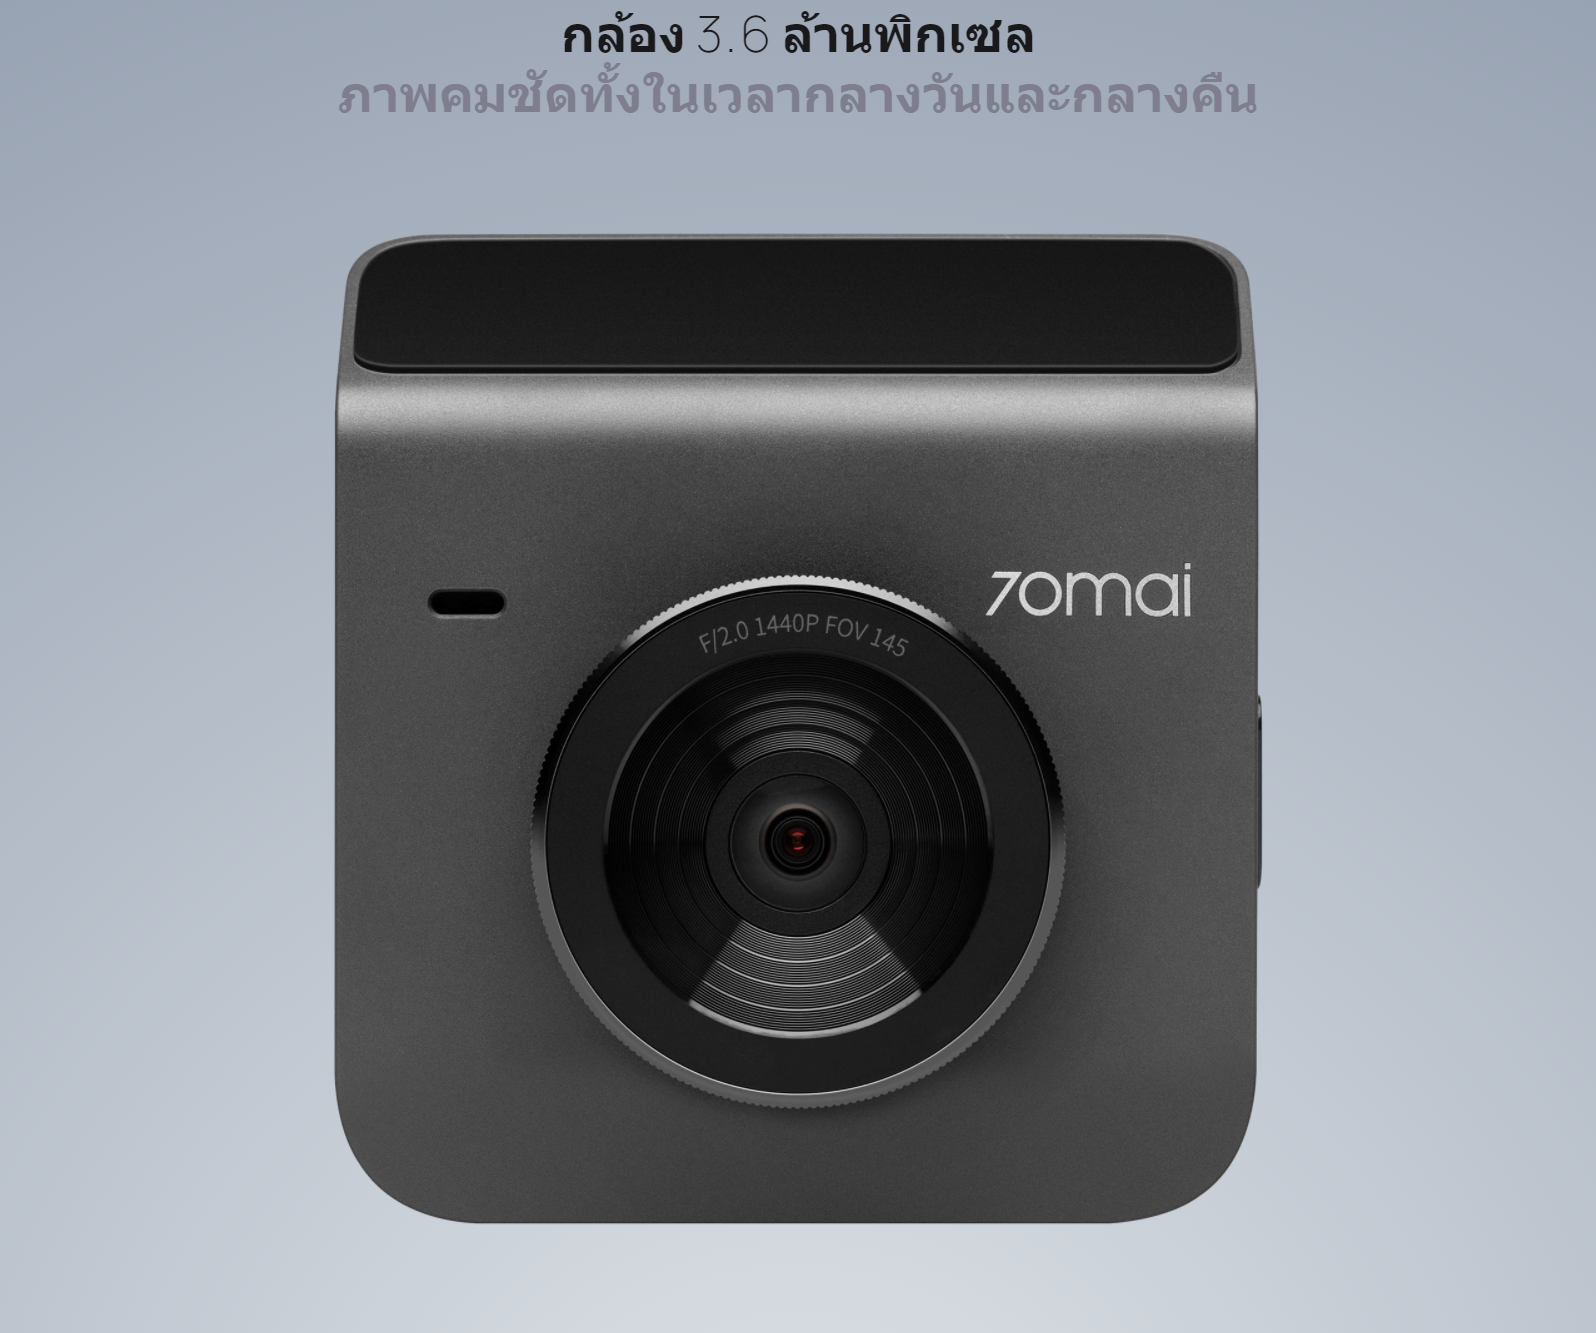 รูปภาพรายละเอียดของ 70mai Dash Cam A400 (Grey)+RC09 Set ชุดกล้องติดรถยนต์ สีเทา ของแท้ ประกันศูนย์ 1ปี (หน้า-หลัง)